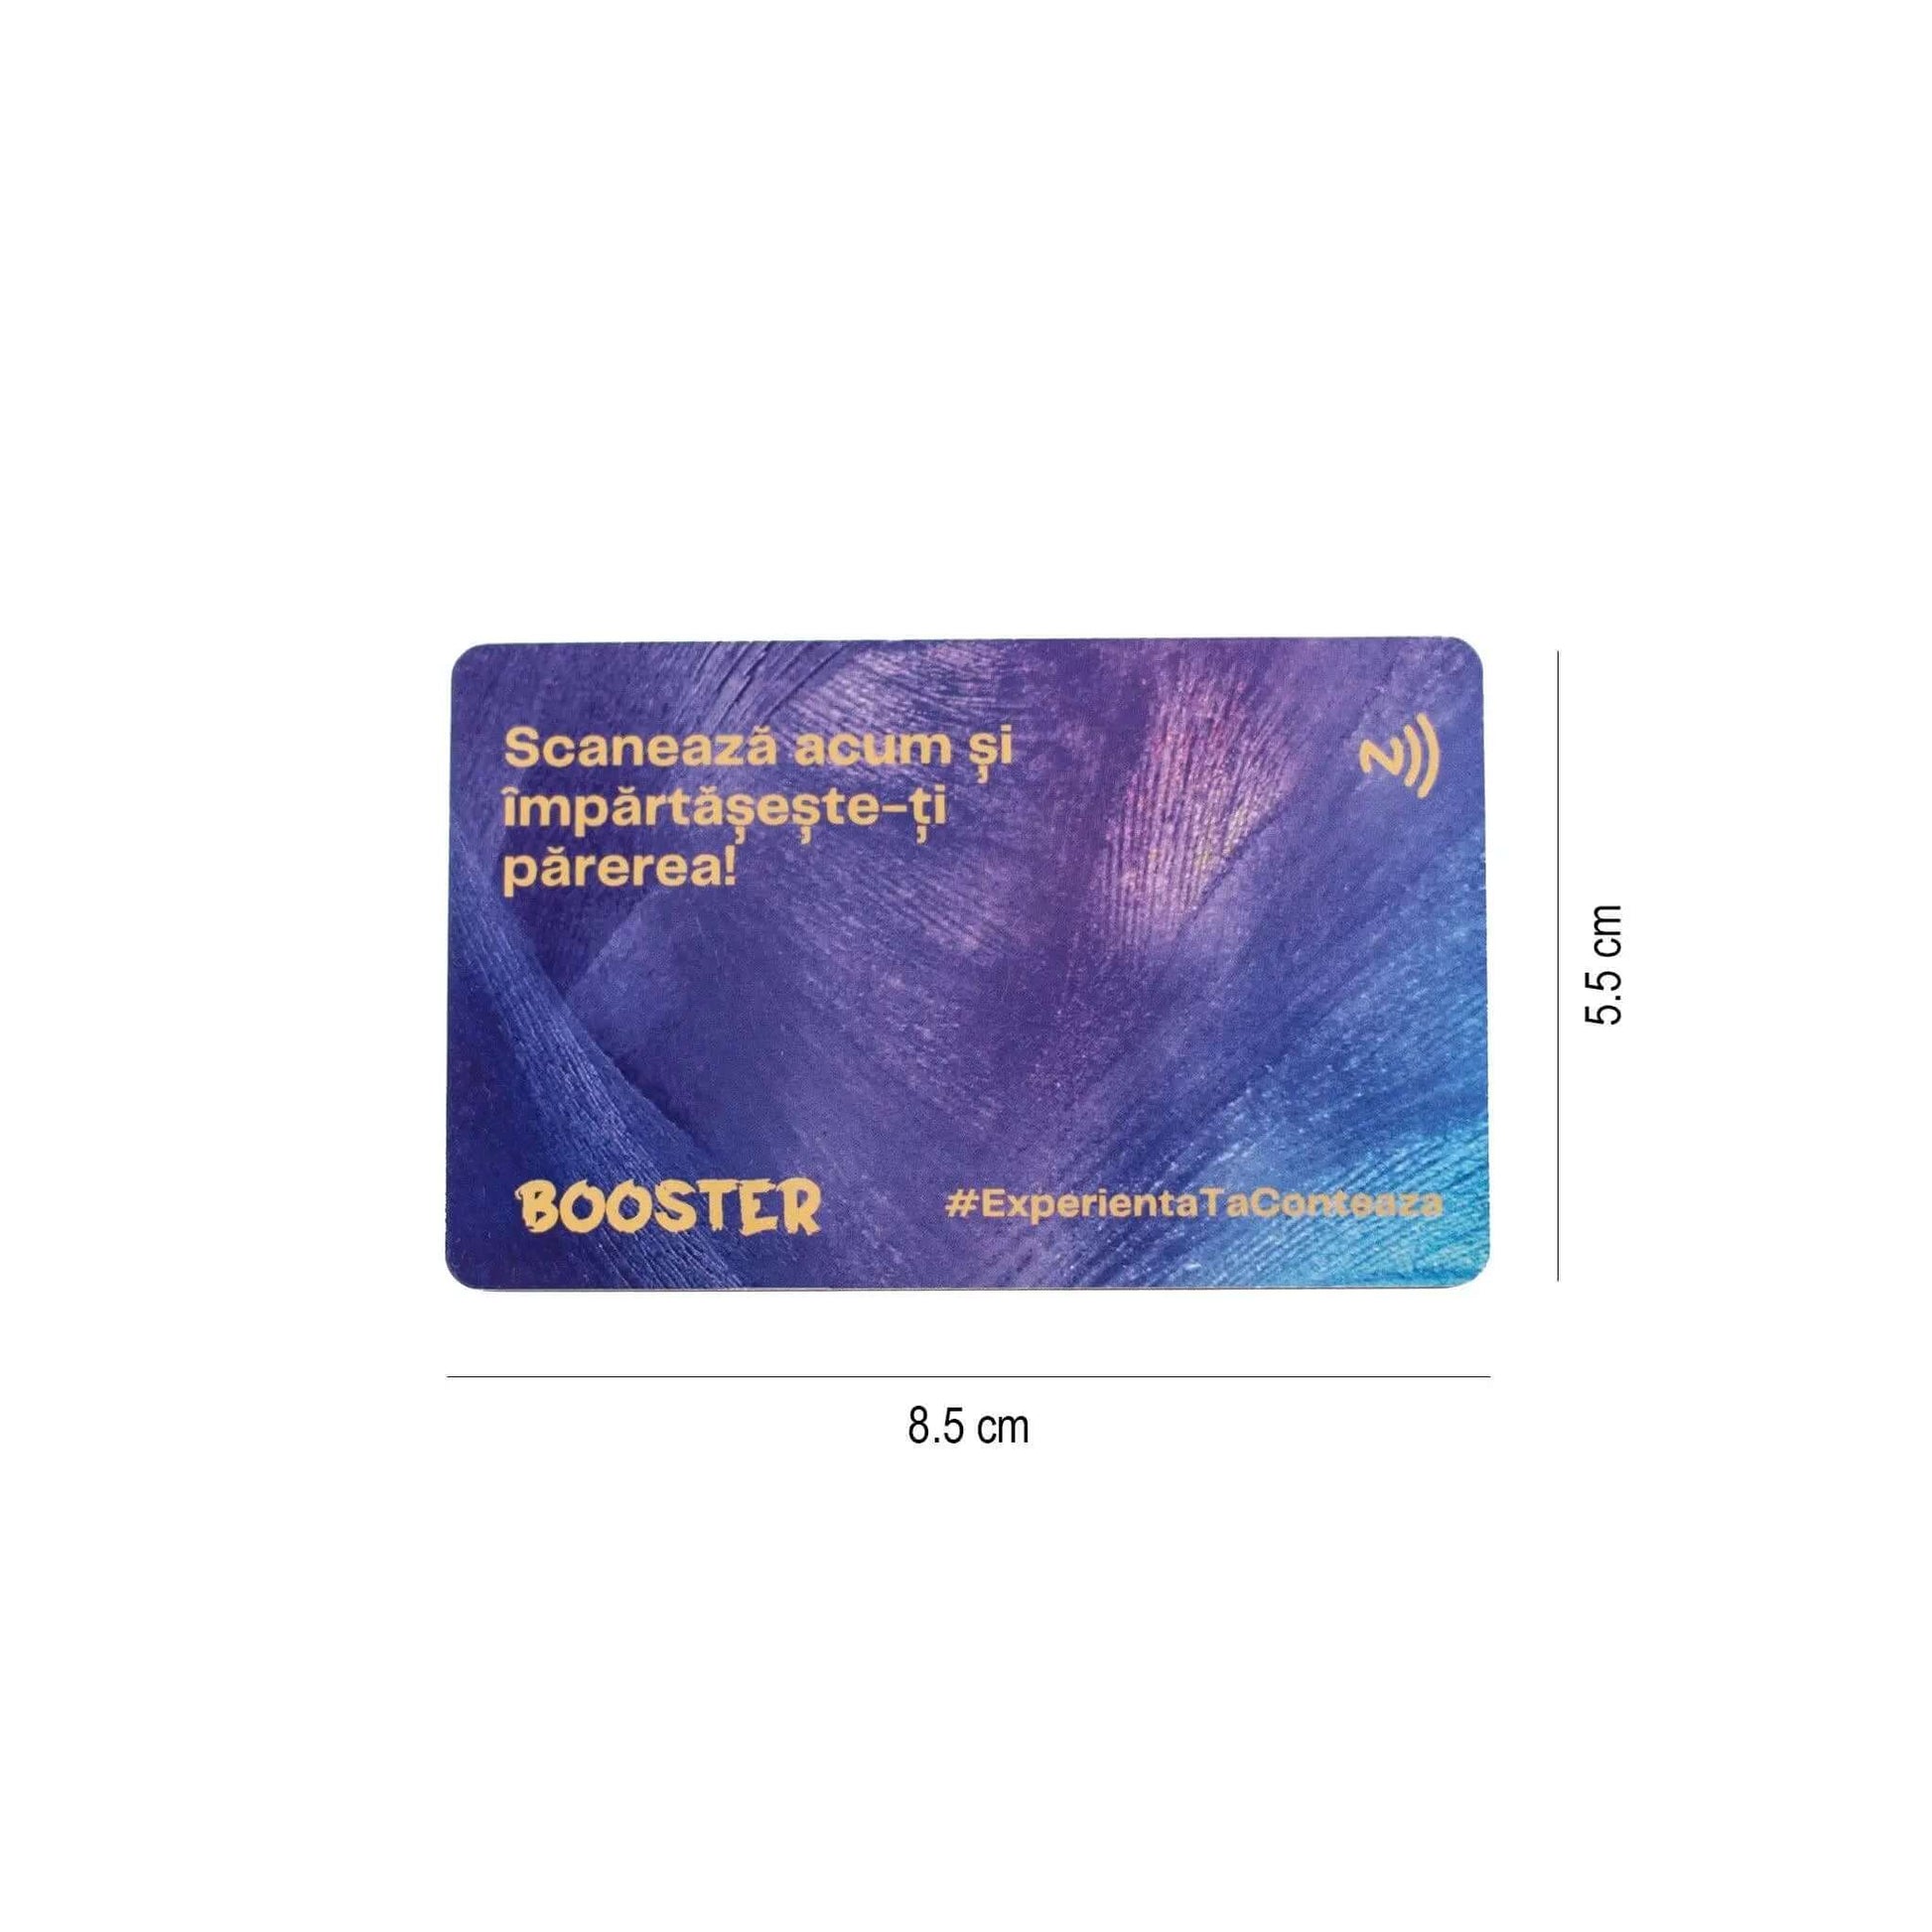 Booster Card pentru Recenzii - soluția pentru obținerea mai multor recenzii pozitive